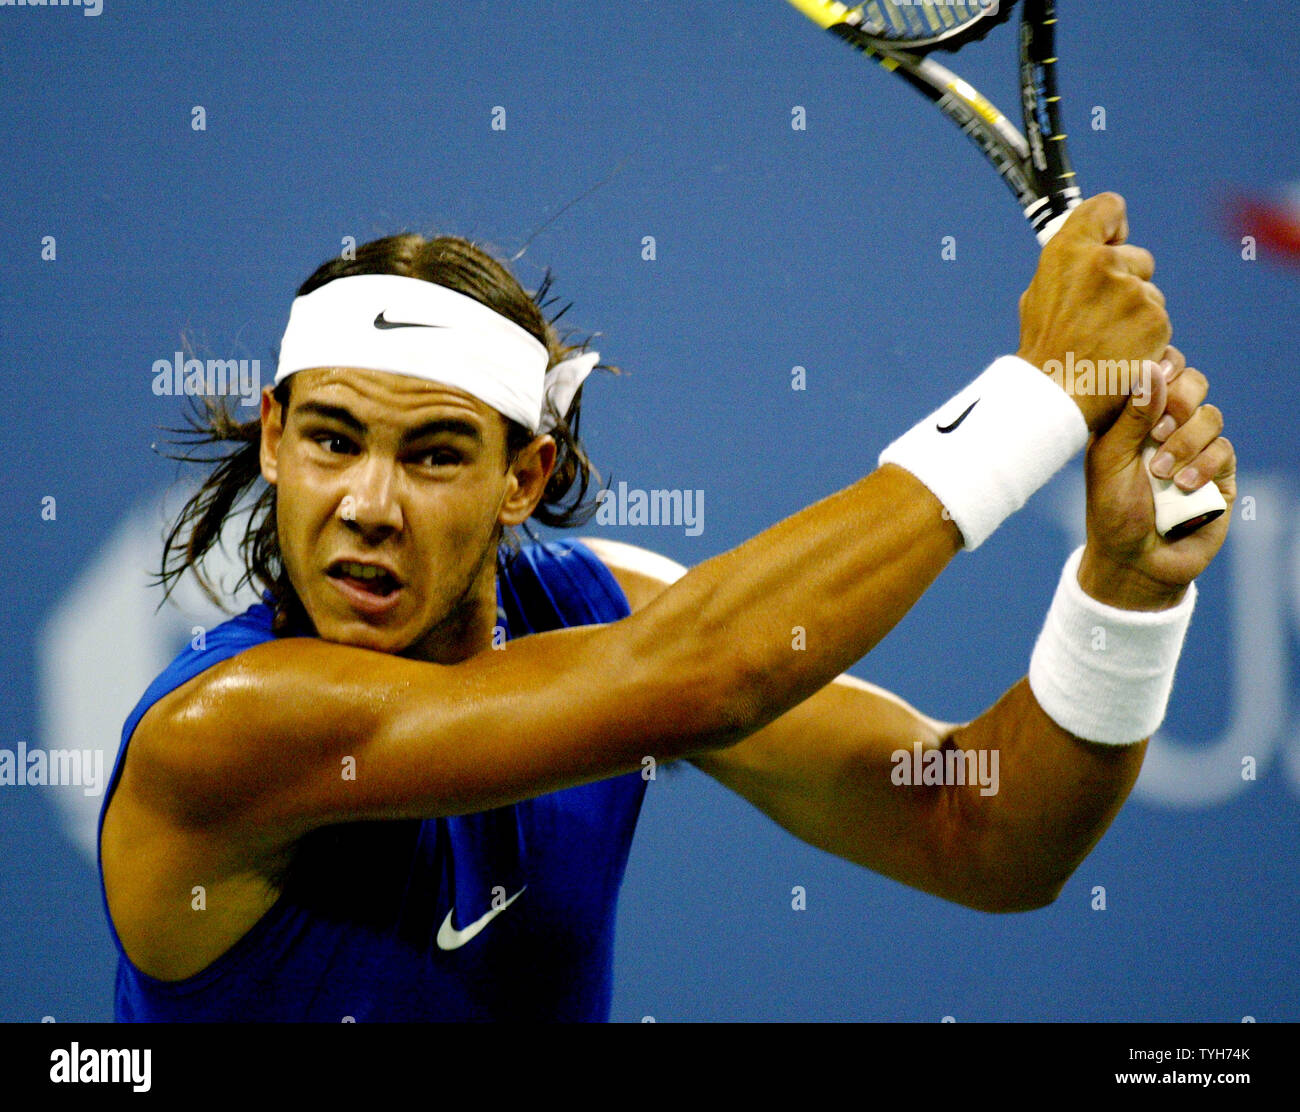 Rafael Nadal de l'Espagne, qui est classé deuxième, s'apprête à retourner la balle à Scoville Jenkins (USA) au cours de la première série de leur match à l'US Open le 31 août 2005 à New York. (Photo d'UPI/Monika Graff) Banque D'Images